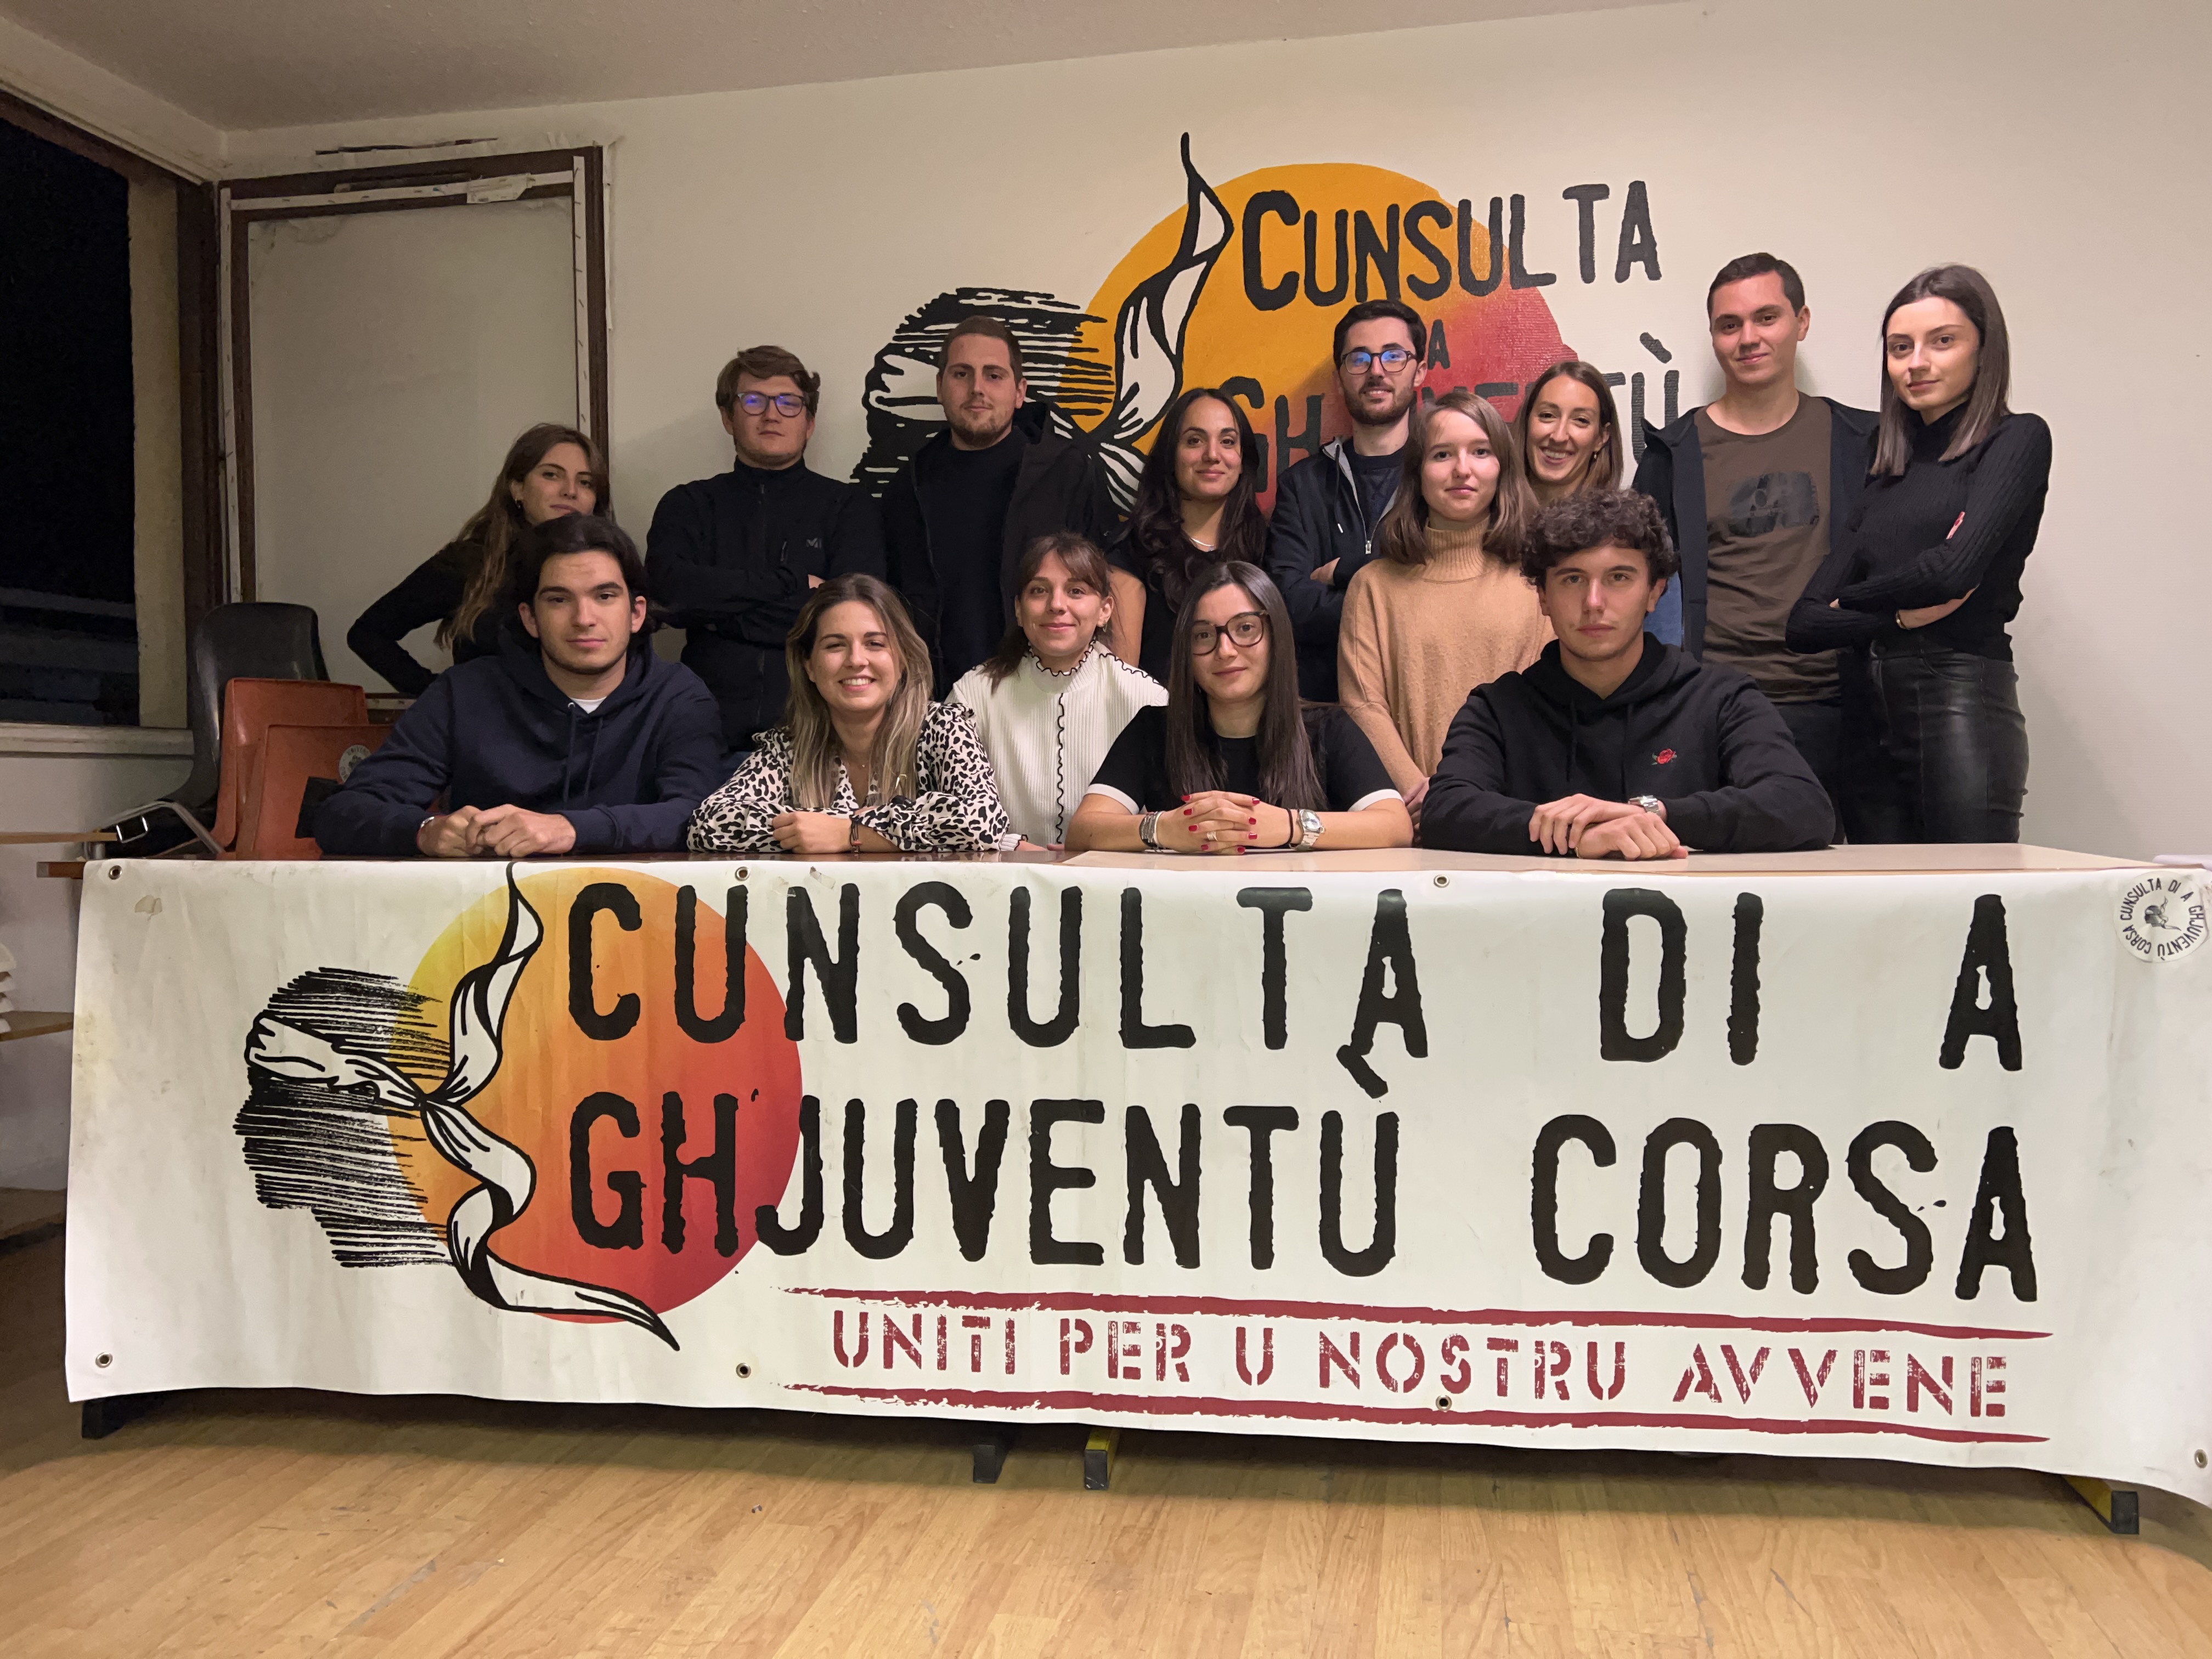 La CGC et sa vingtaine de membres compte bien peser dans l'élaboration de la nouvelle carte des formations de l'université de Corse. Crédits Photo : CGC